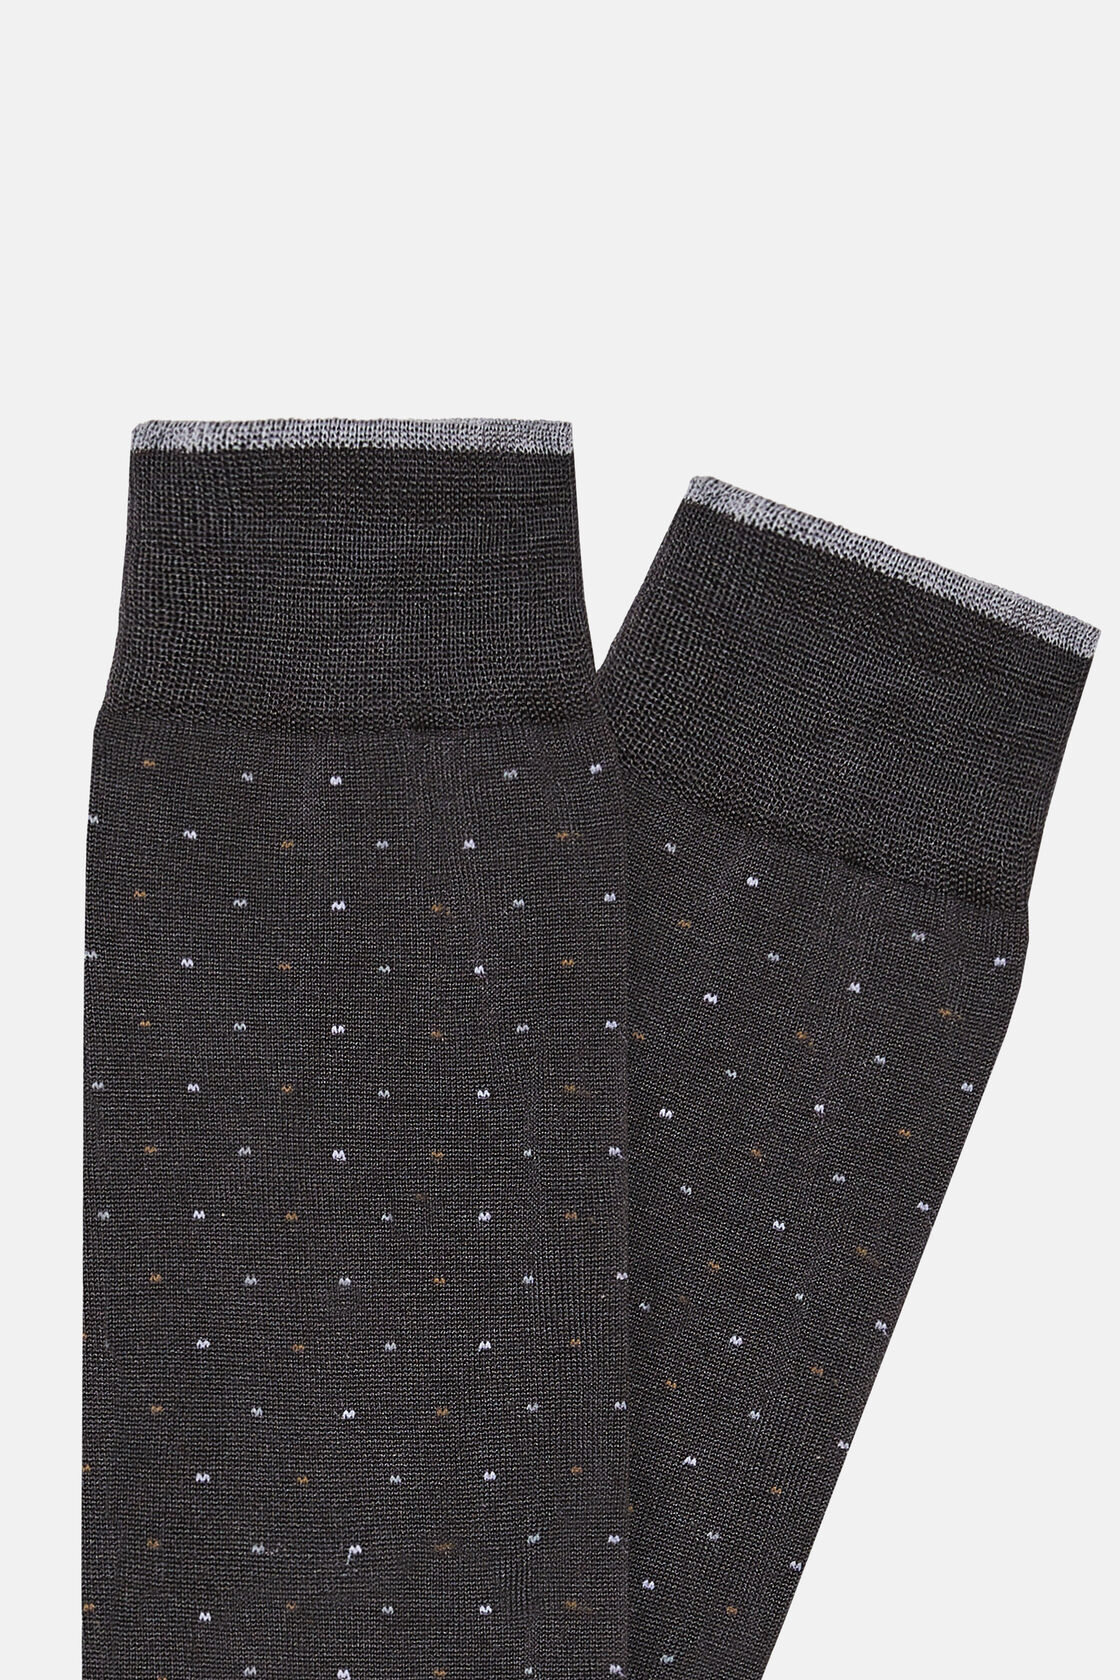 Socken mit Mikropunktemuster aus Baumwolle, Grau, hi-res